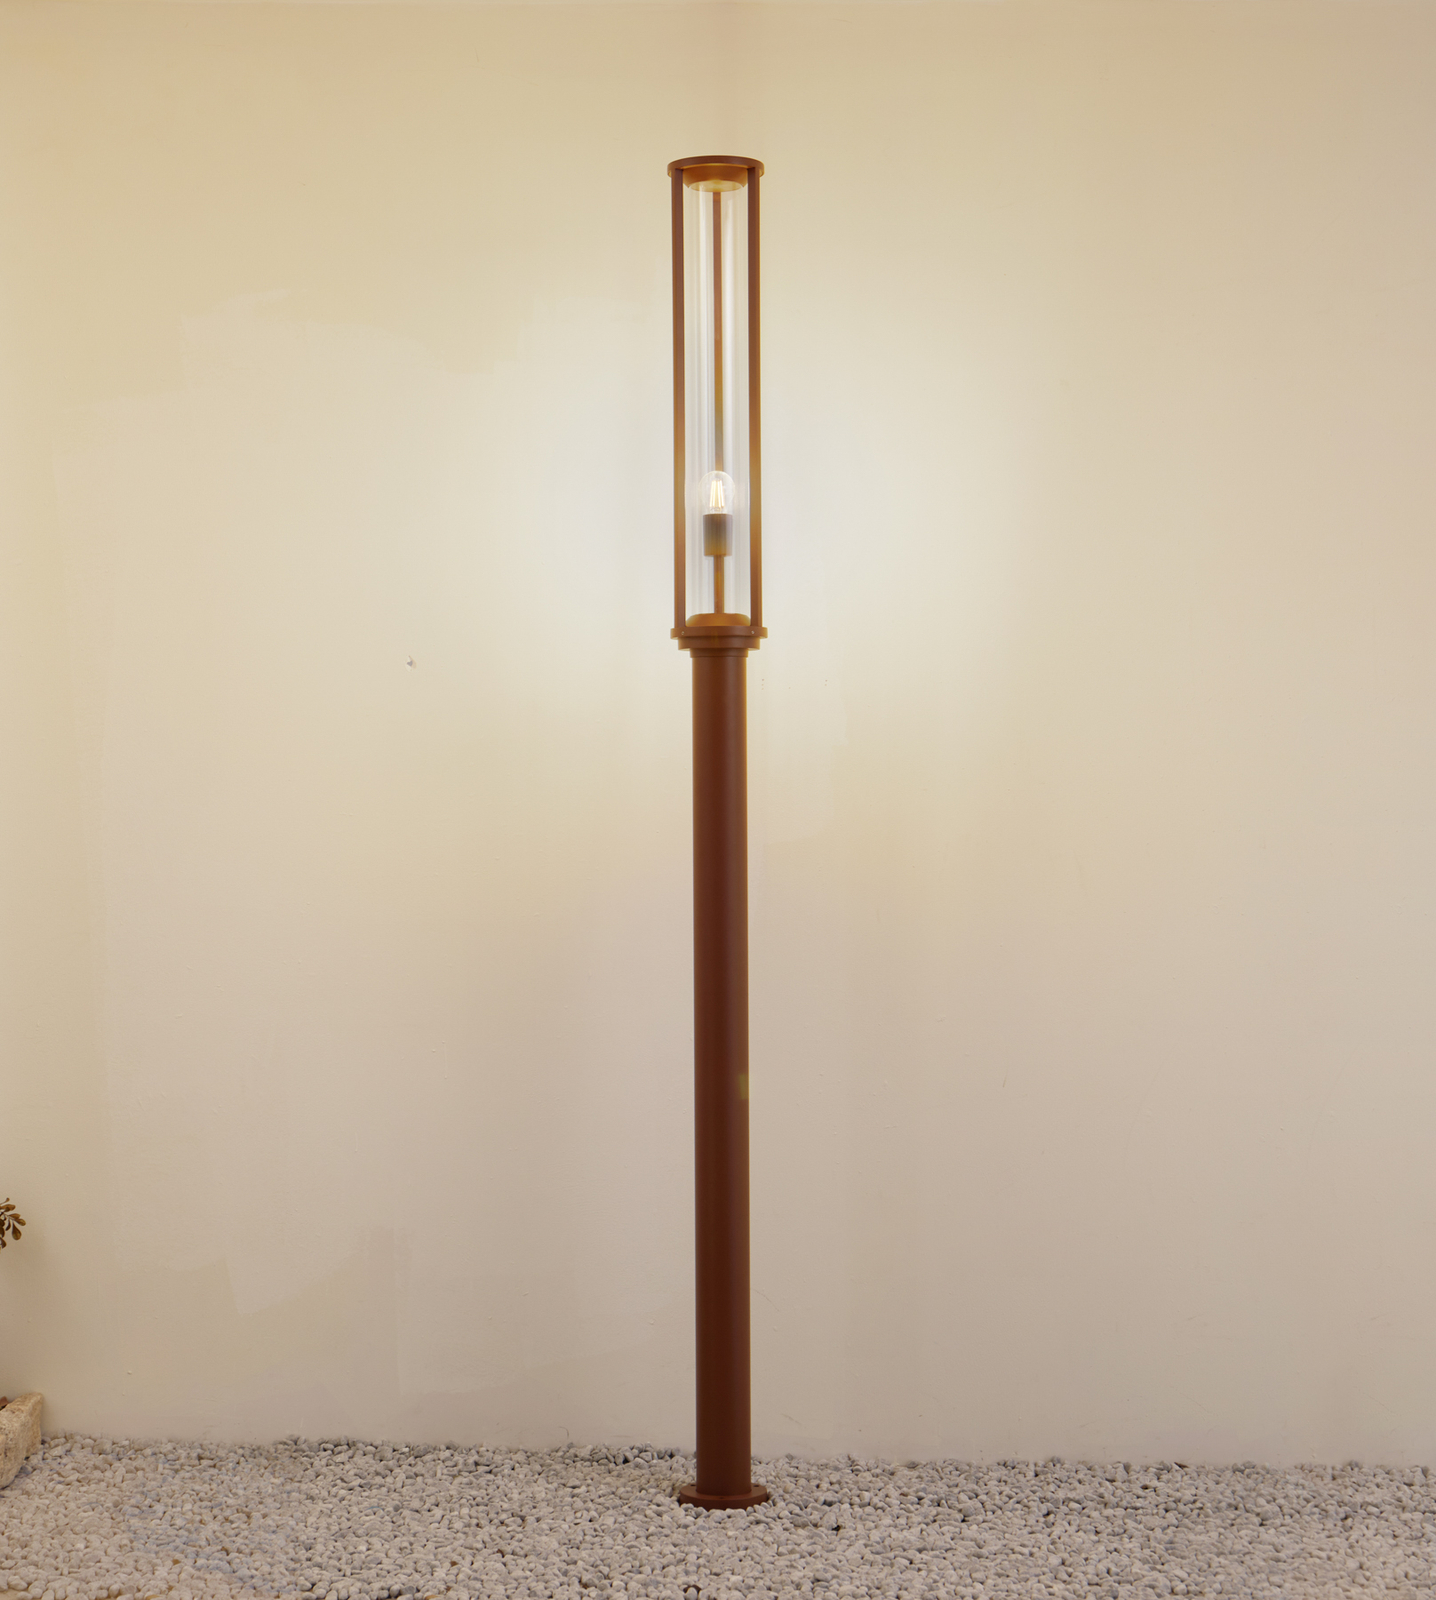 Putno svjetlo Lucande Alivaro, u boji hrđe, aluminij, 220 cm, E27